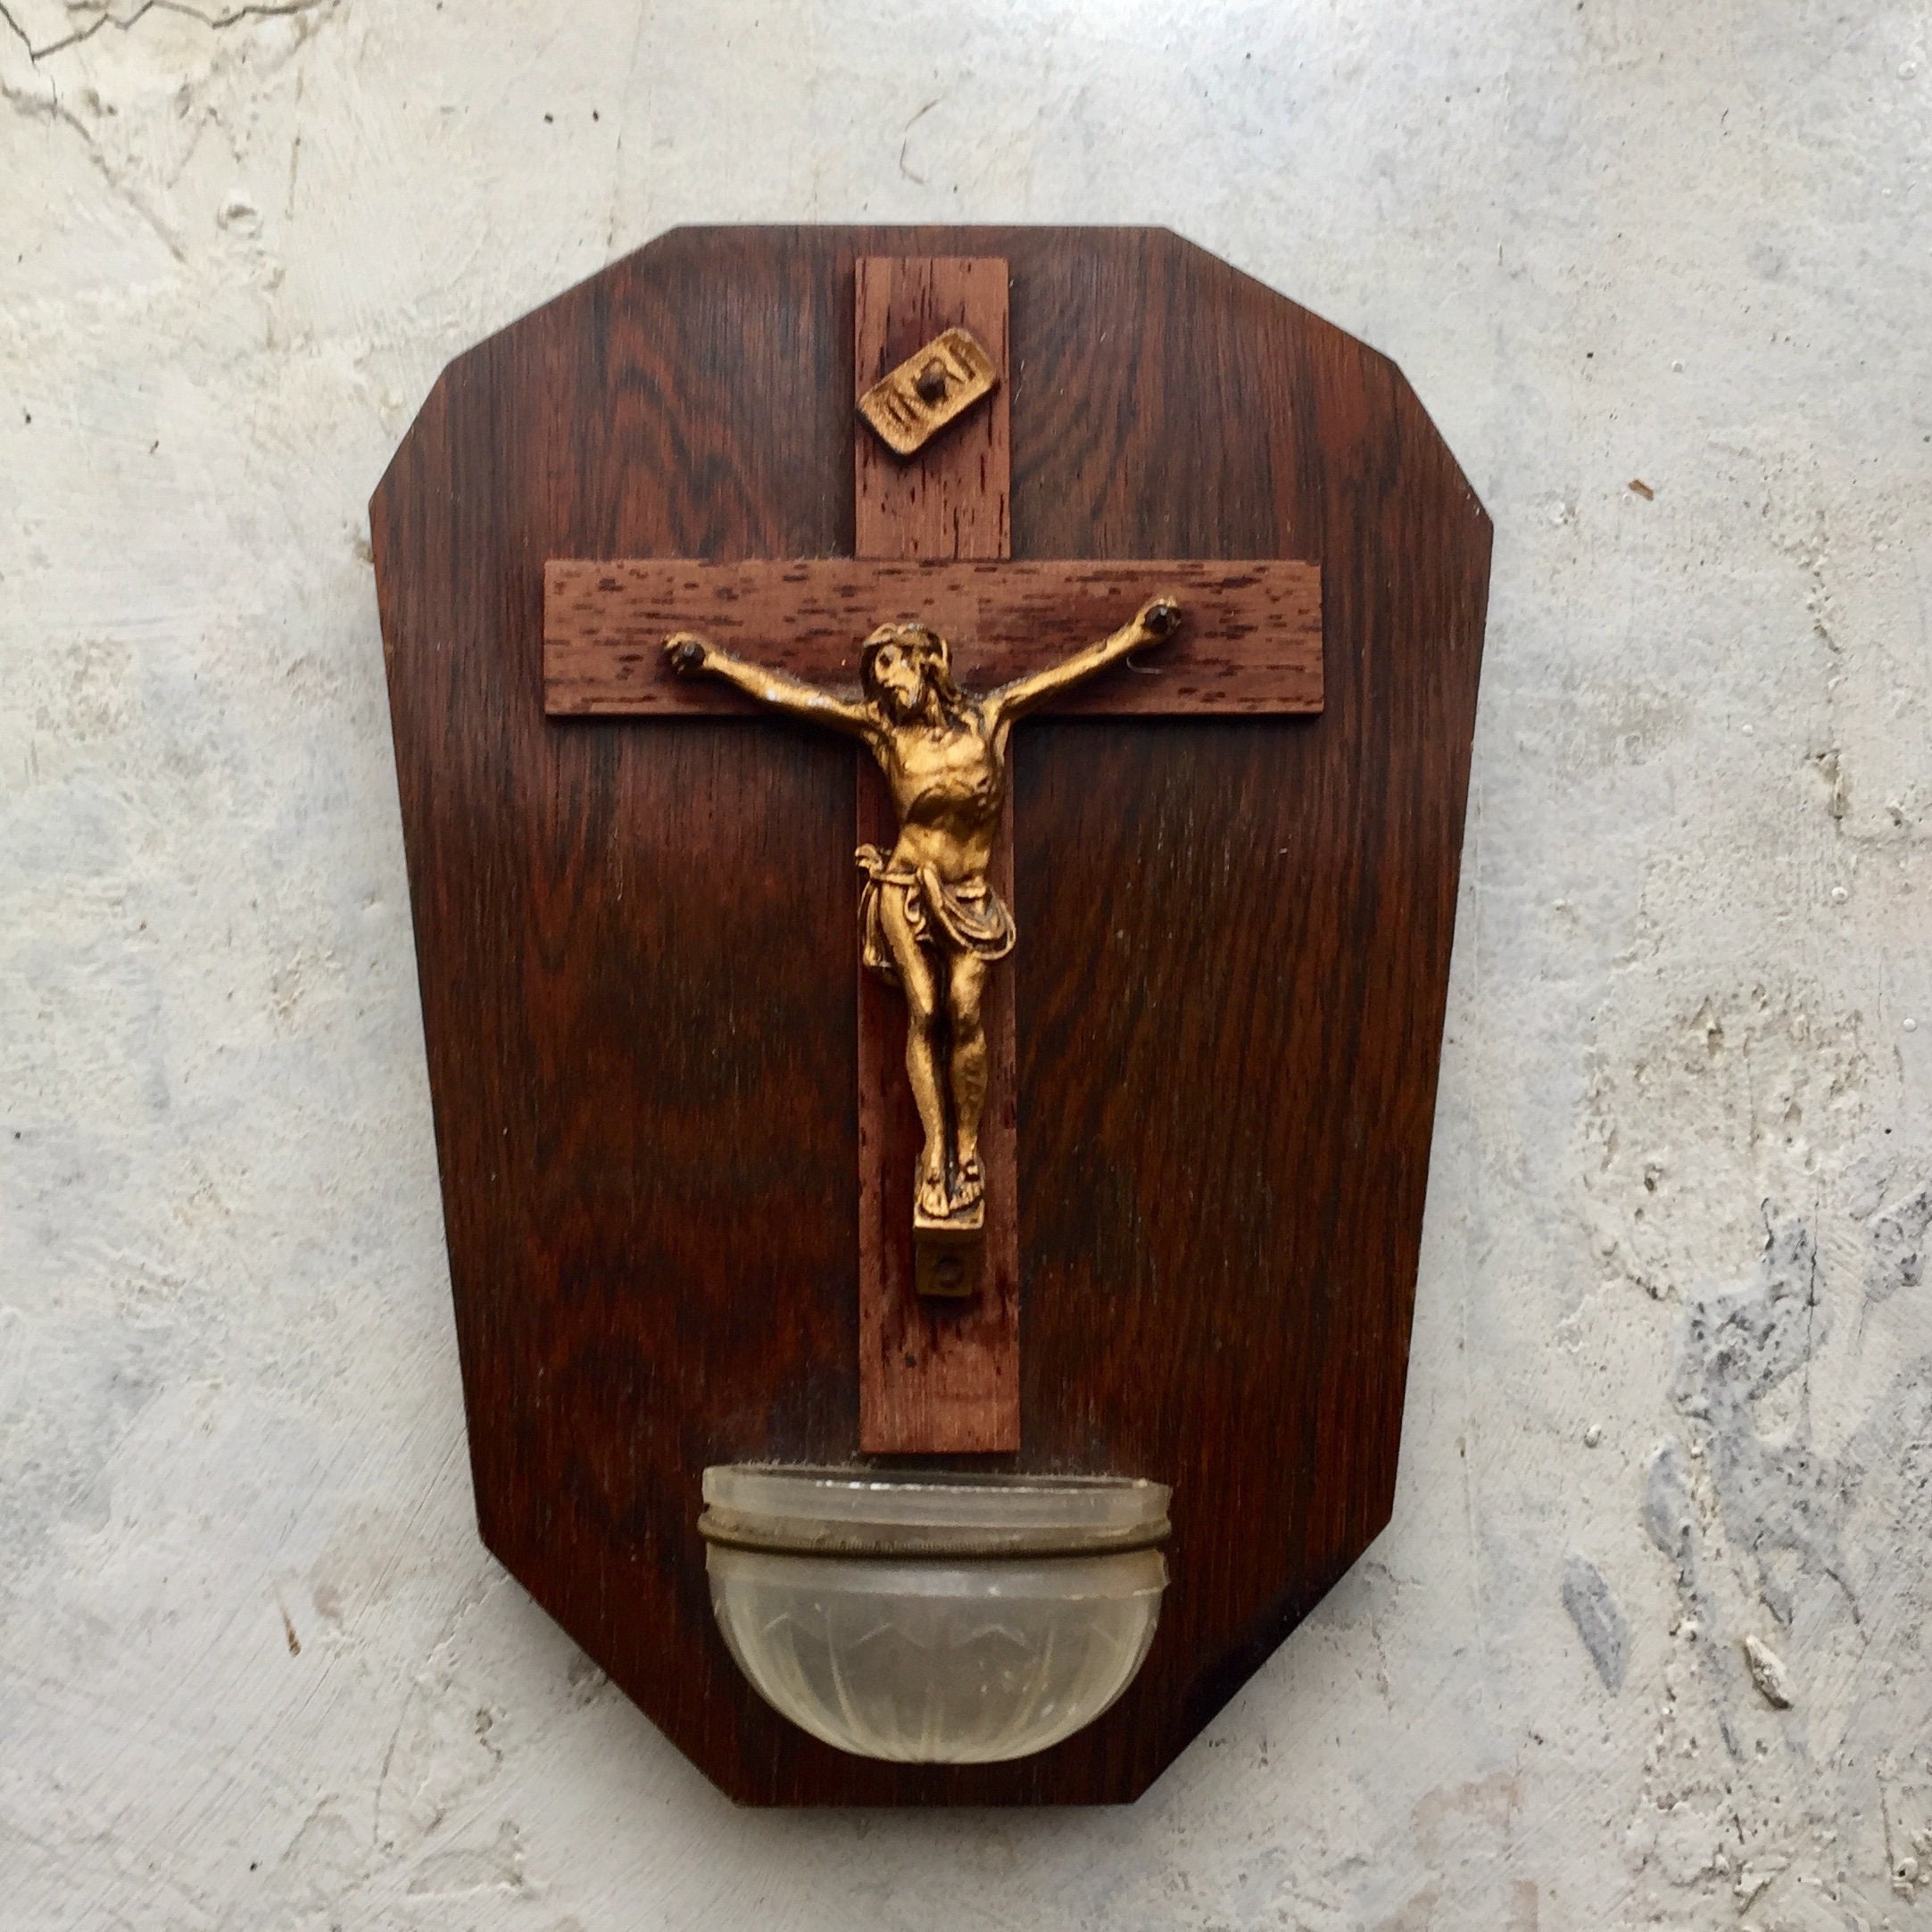 Petite Police Sainte Antique de France, Corpus Christi sur Un Crucifix en Bois Fabriqué à La Main Fr